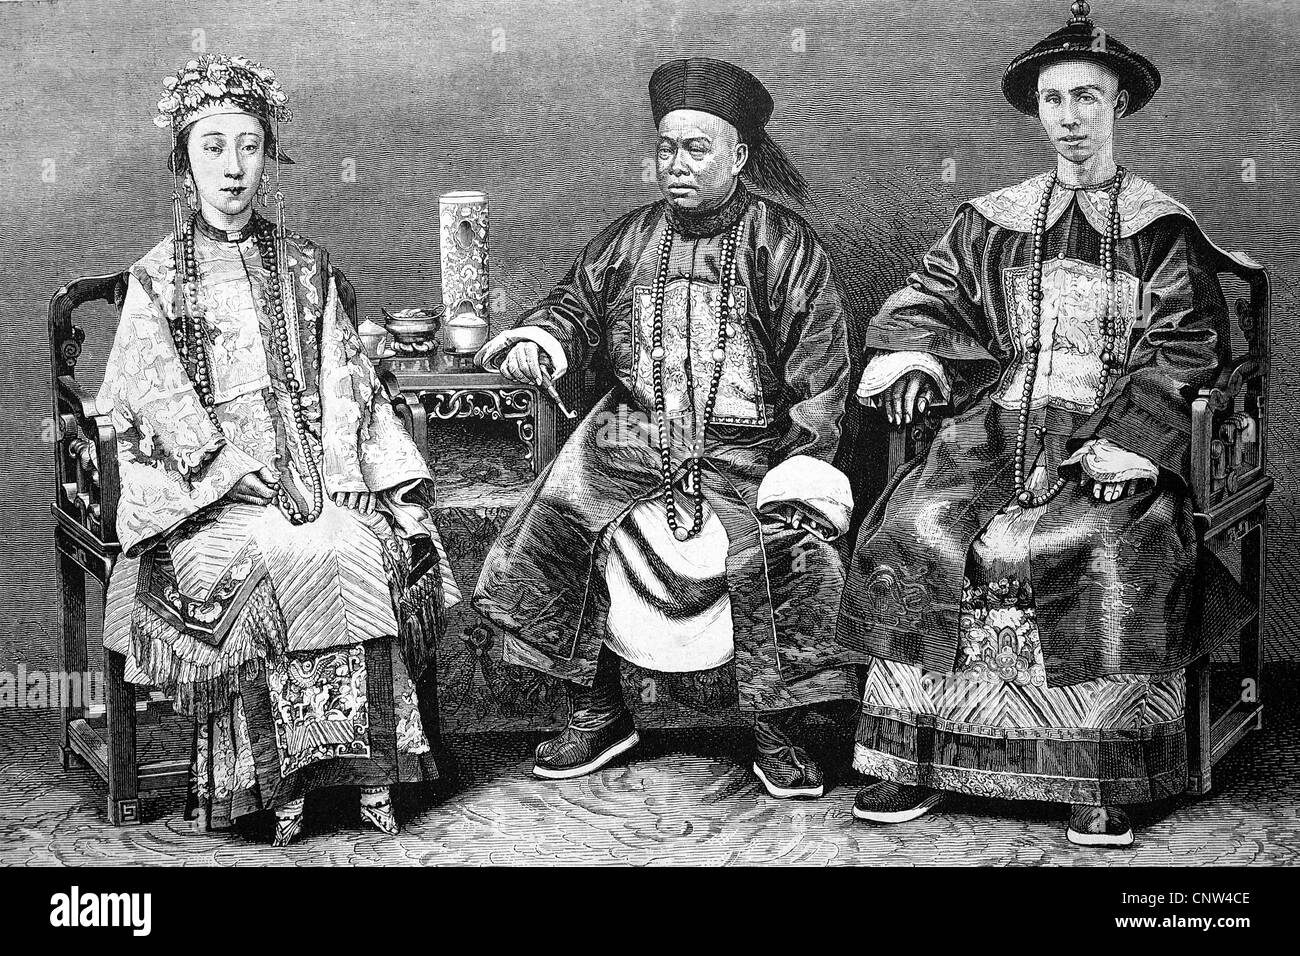 Capacità militari e civili di mandarino uomini accanto a una donna di mandarino in Cina imperiale, storica incisione su legno, 1886 Foto Stock